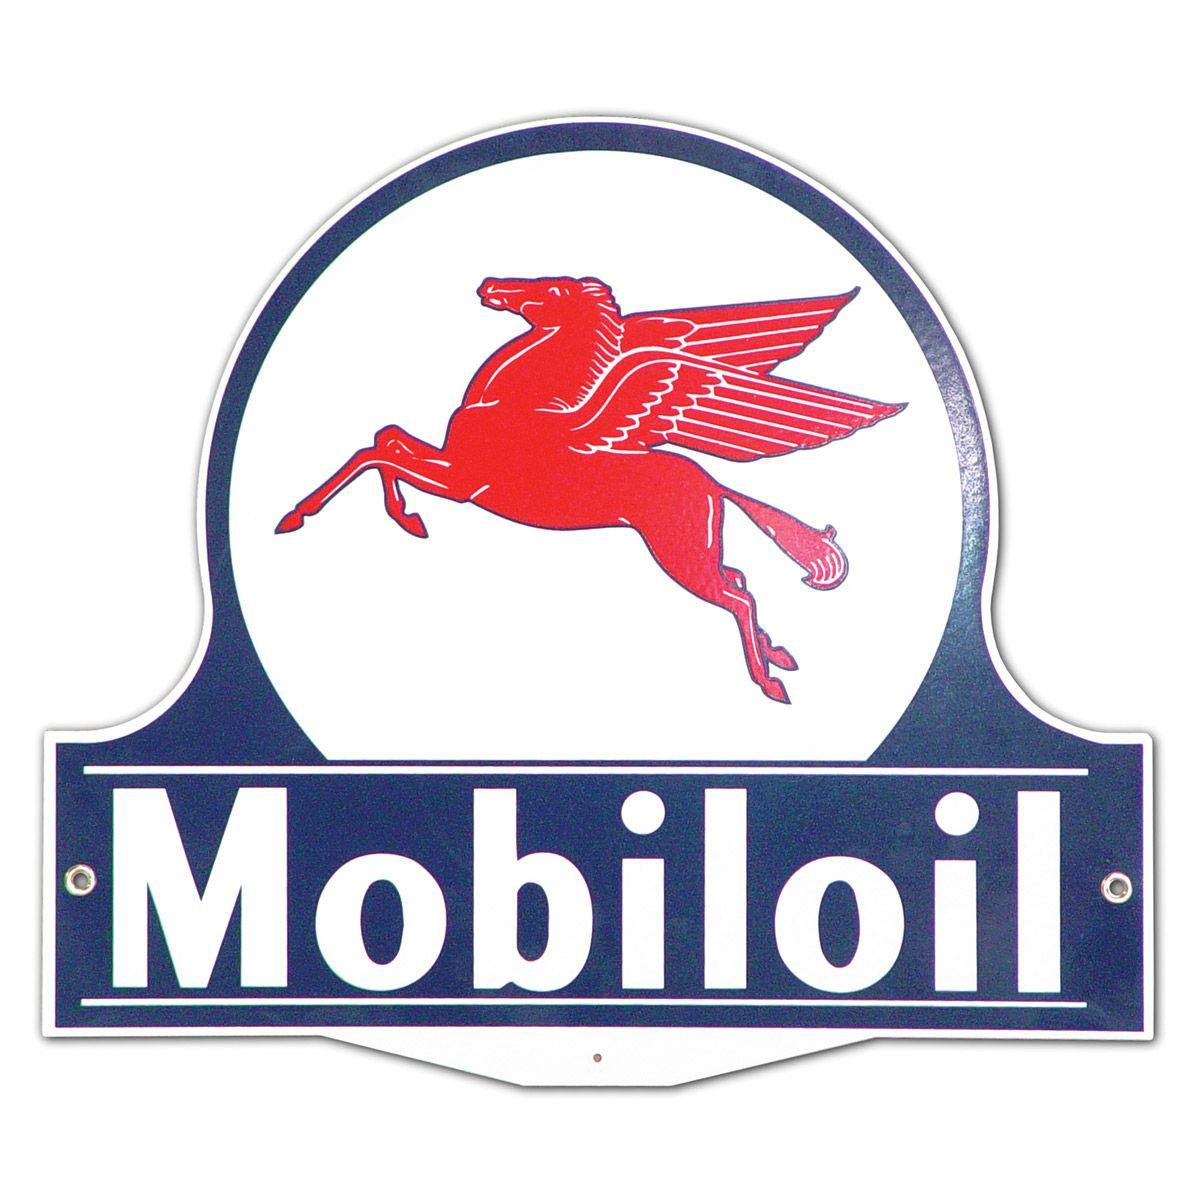 Old Mobil Oil Logo - Mobiloil Pegasus Vintage Gas Station Lollipop Metal Sign 15 x 13.25 ...